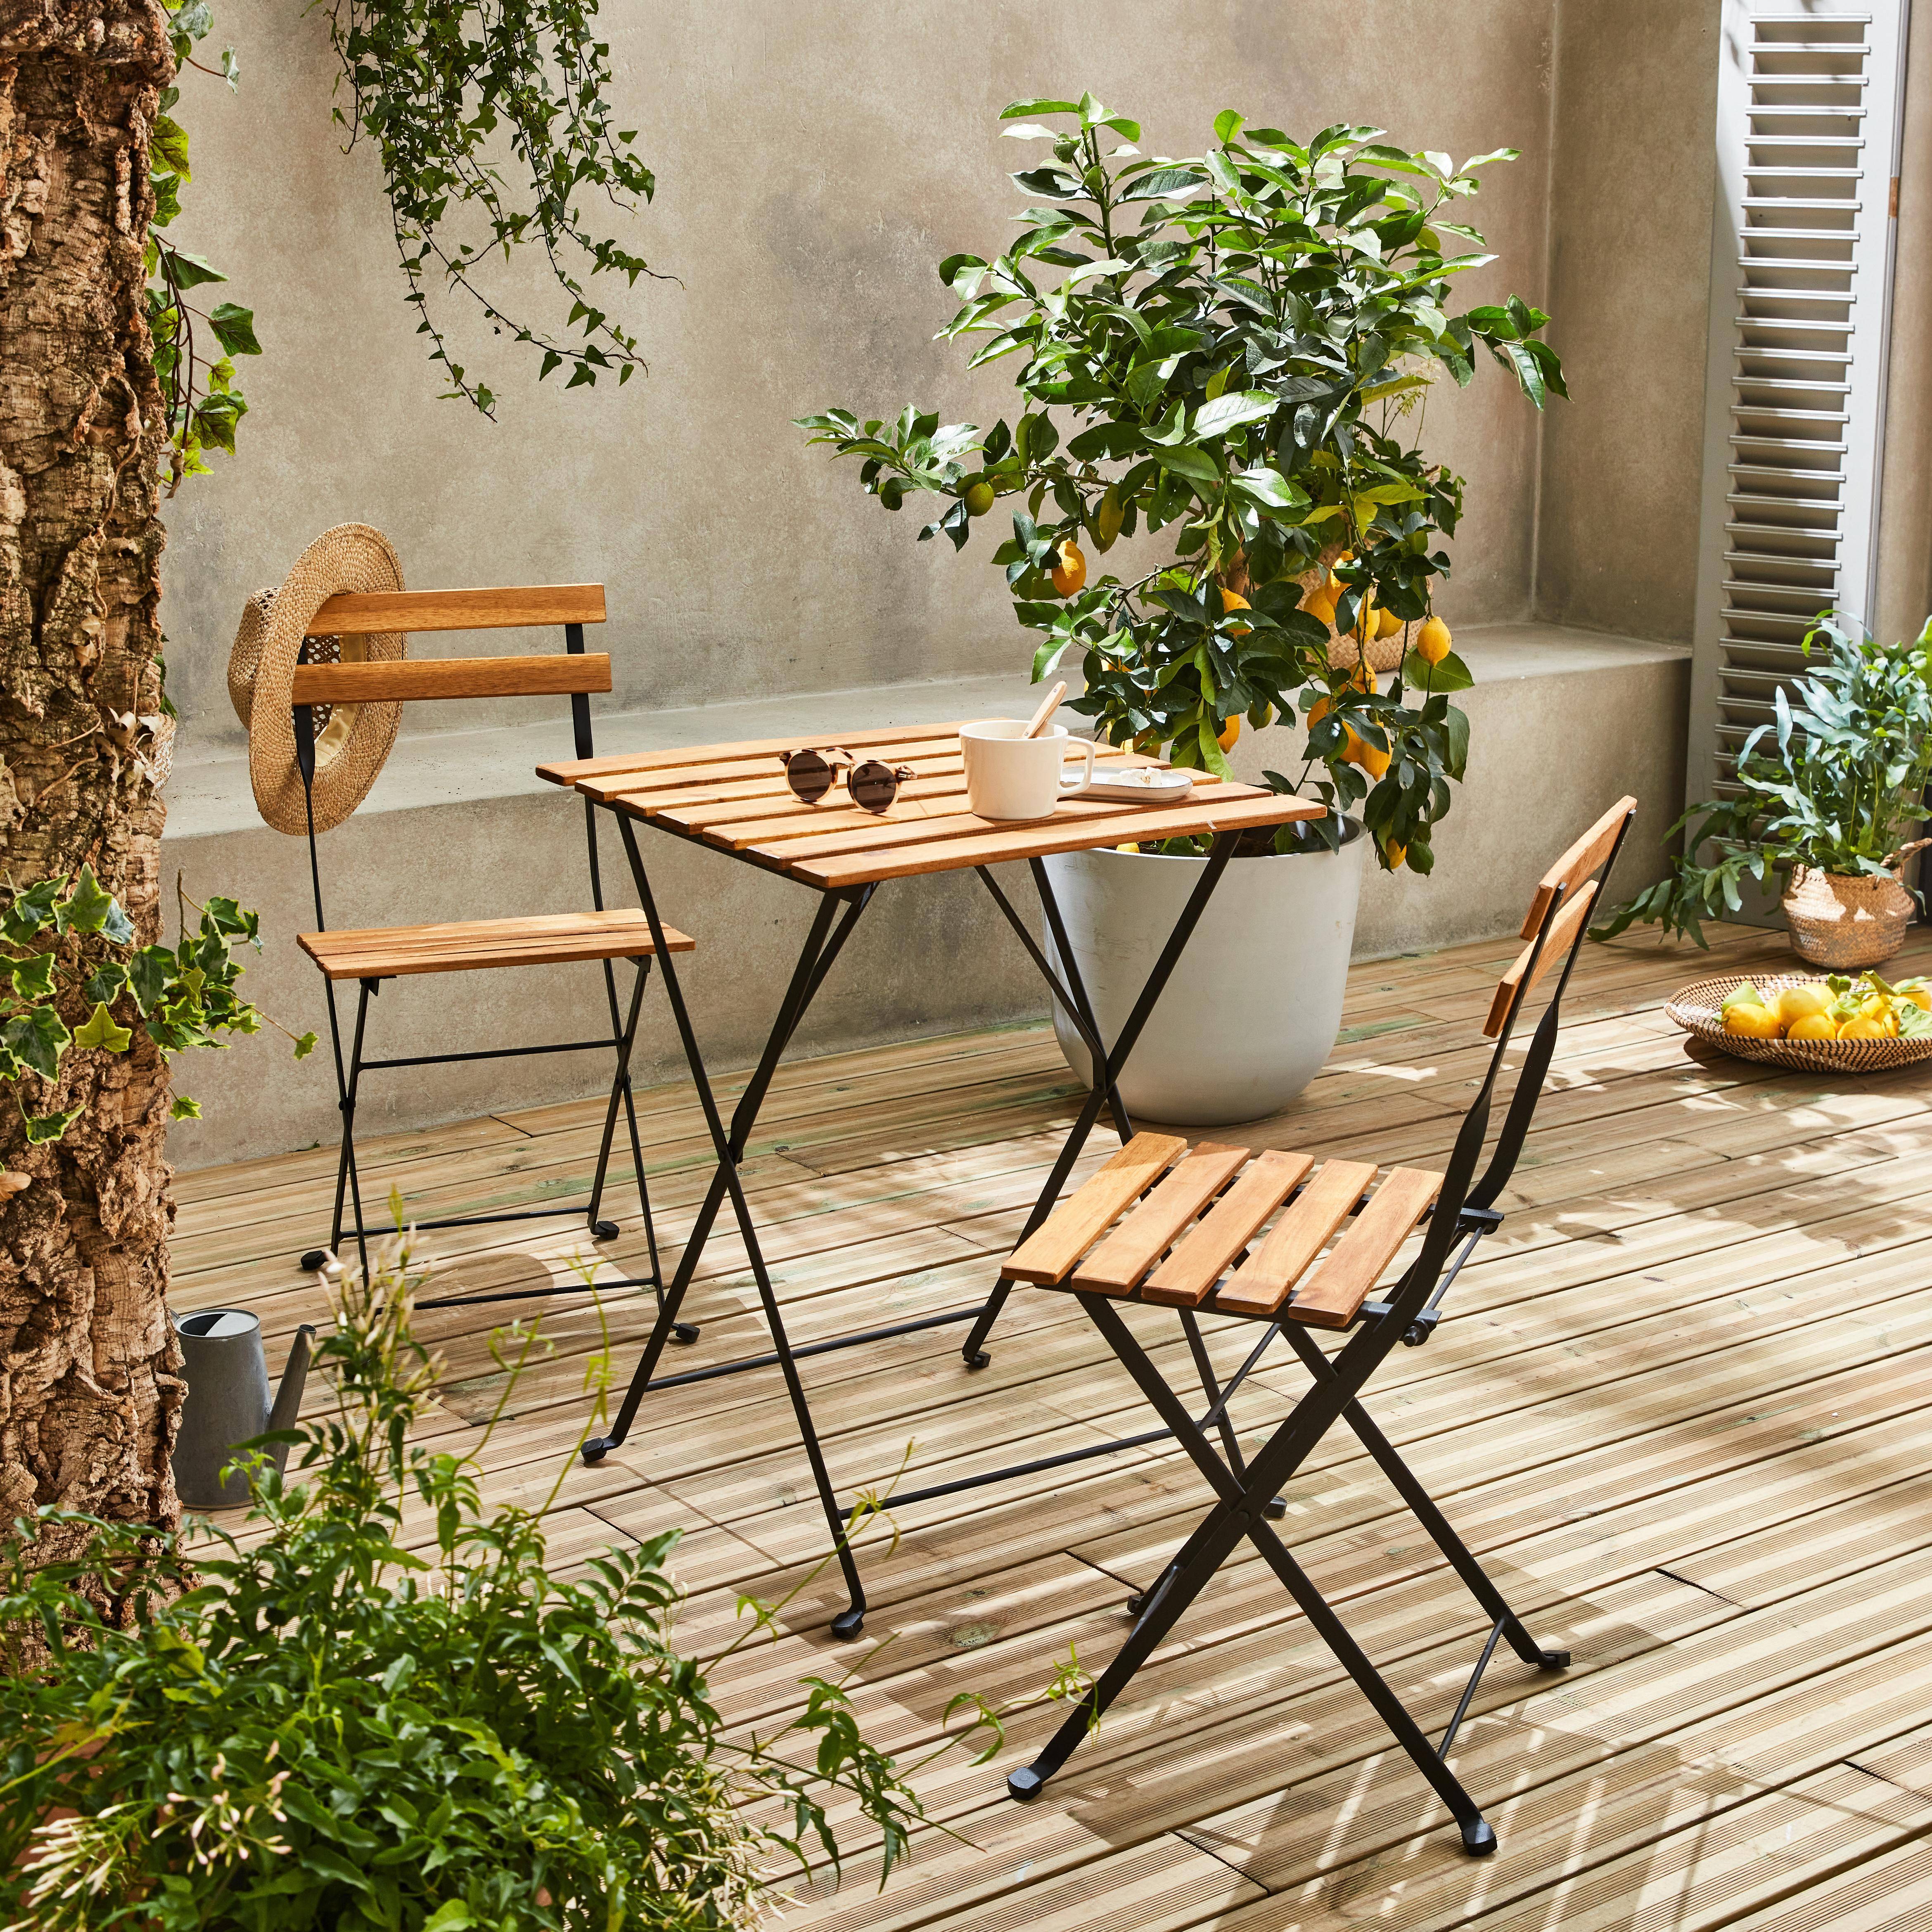 Conjunto de jardín de madera Bistro 60x60cm - Barcelona - terracota, mesa  plegable cuadrada bicolor con 2 sillas plegables, acacia